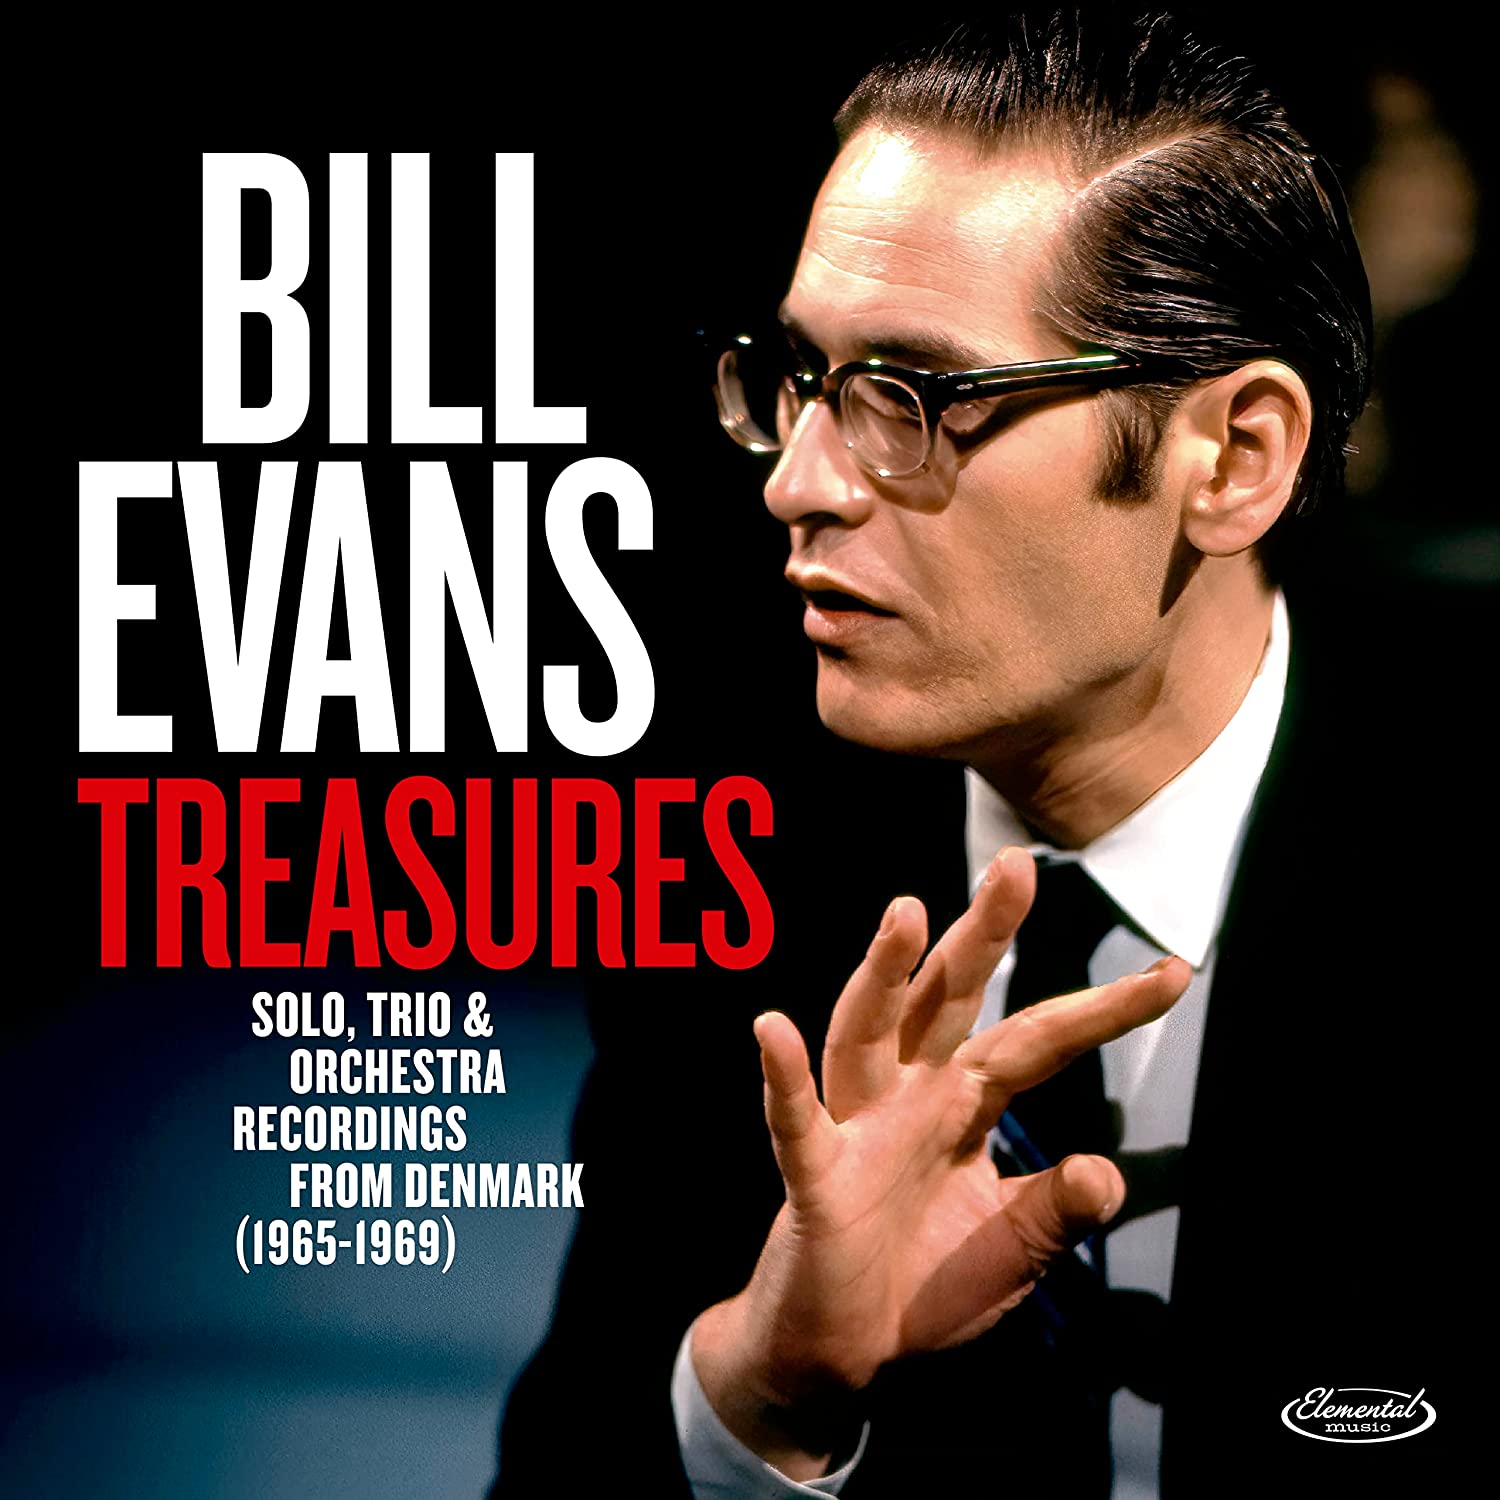 BILL EVANS (PIANO) - Treasures: Solo, Trio & Orchestra In Denmark (1965-1969) cover 